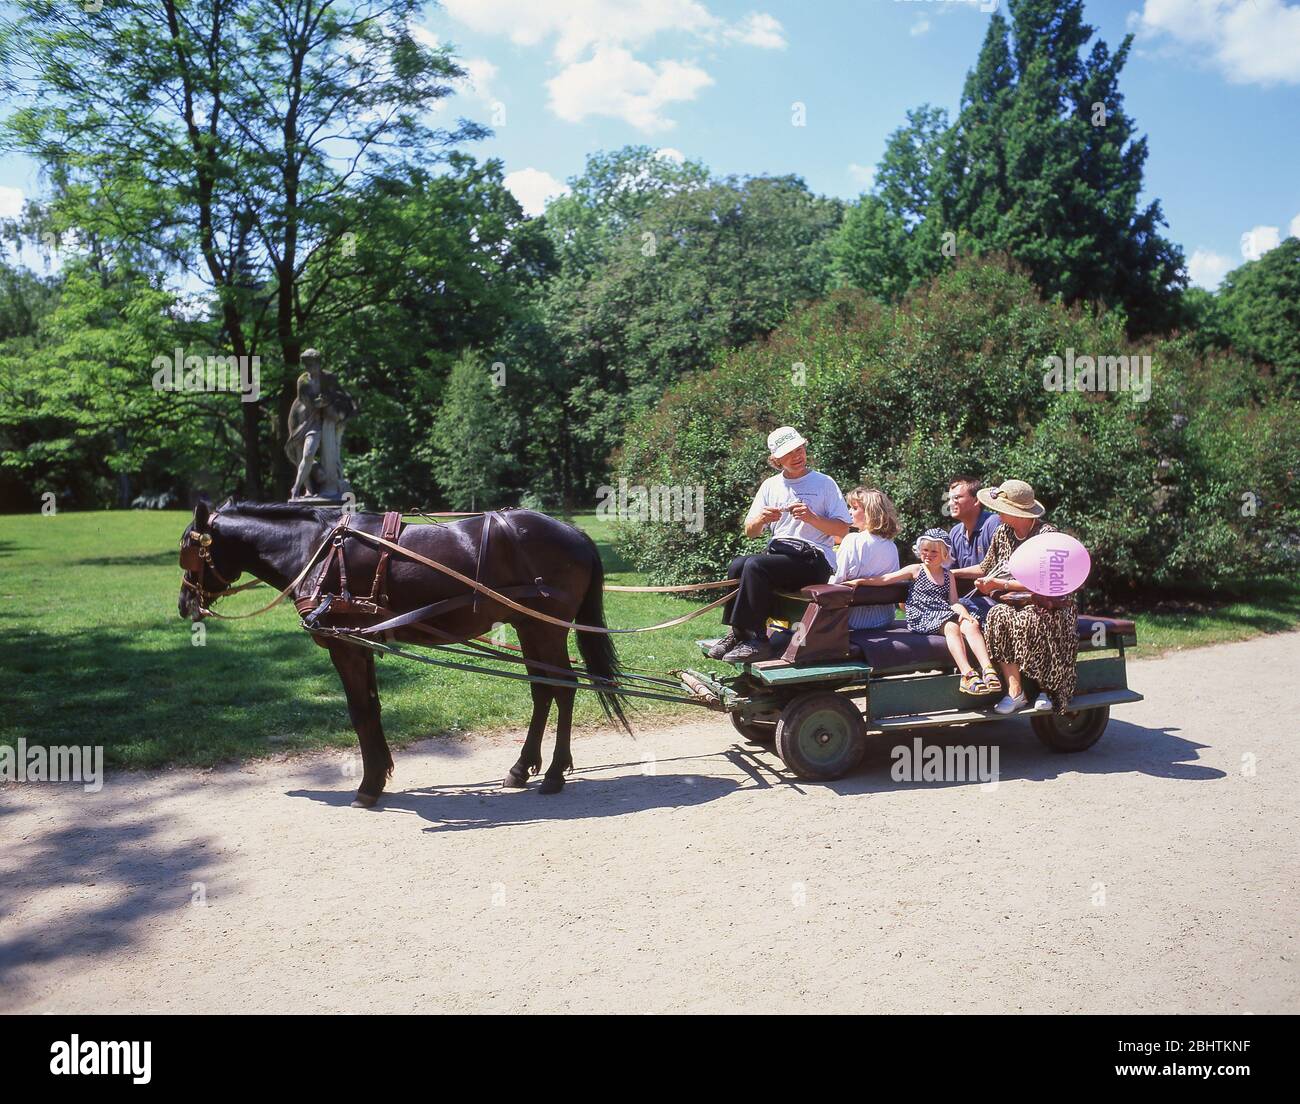 Promenade en buggy à cheval, parc Lazienki (parc Royal Baths), quartier central, Varsovie (Varsovie), République de Pologne Banque D'Images